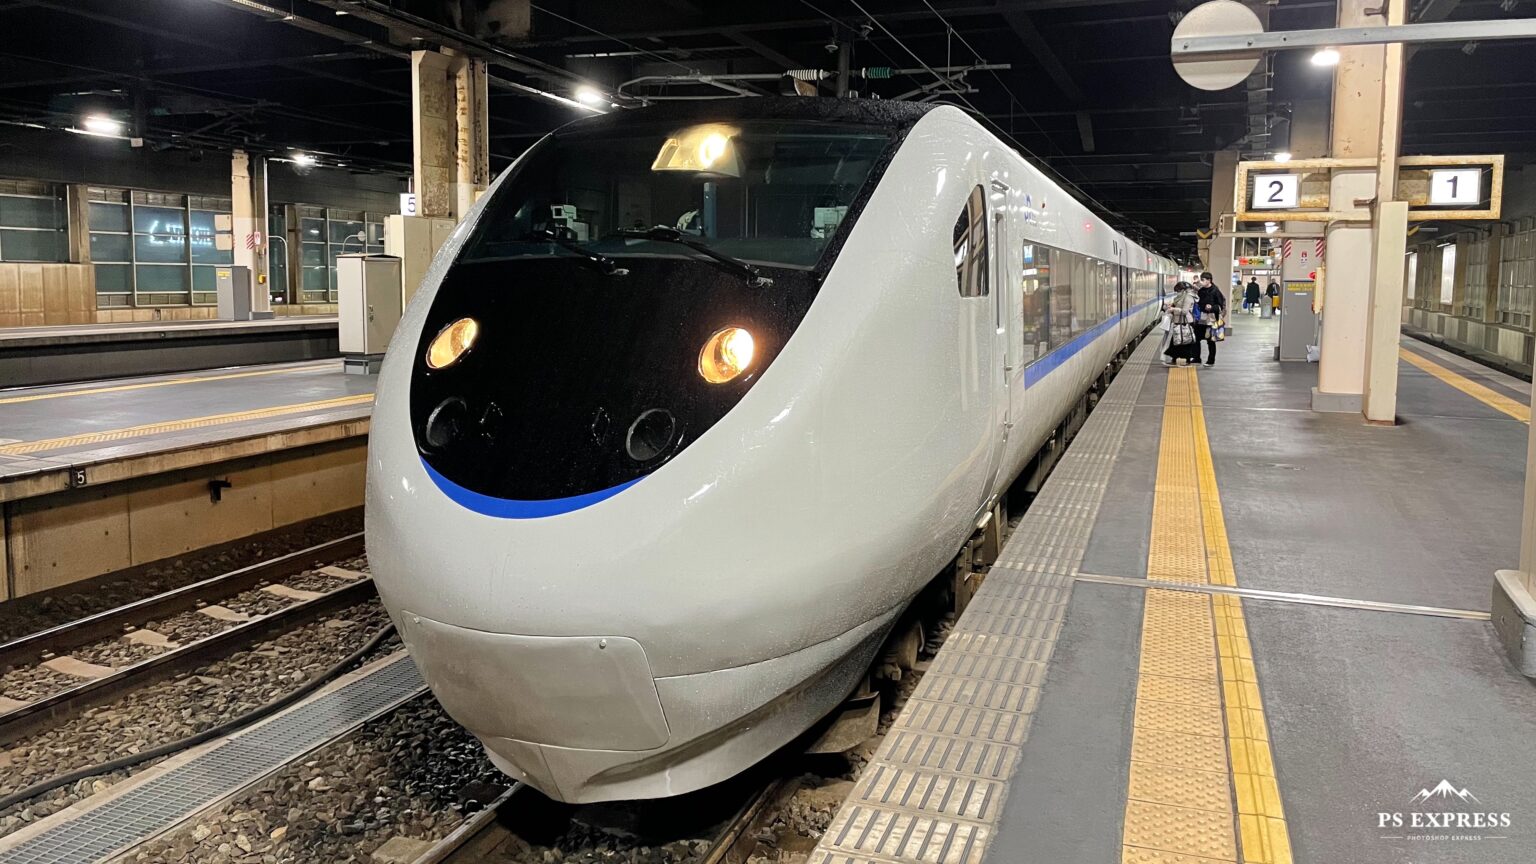 新幹線 新神戸→東京 乗車券・自由席特急券 7/16まで 《送料無料》